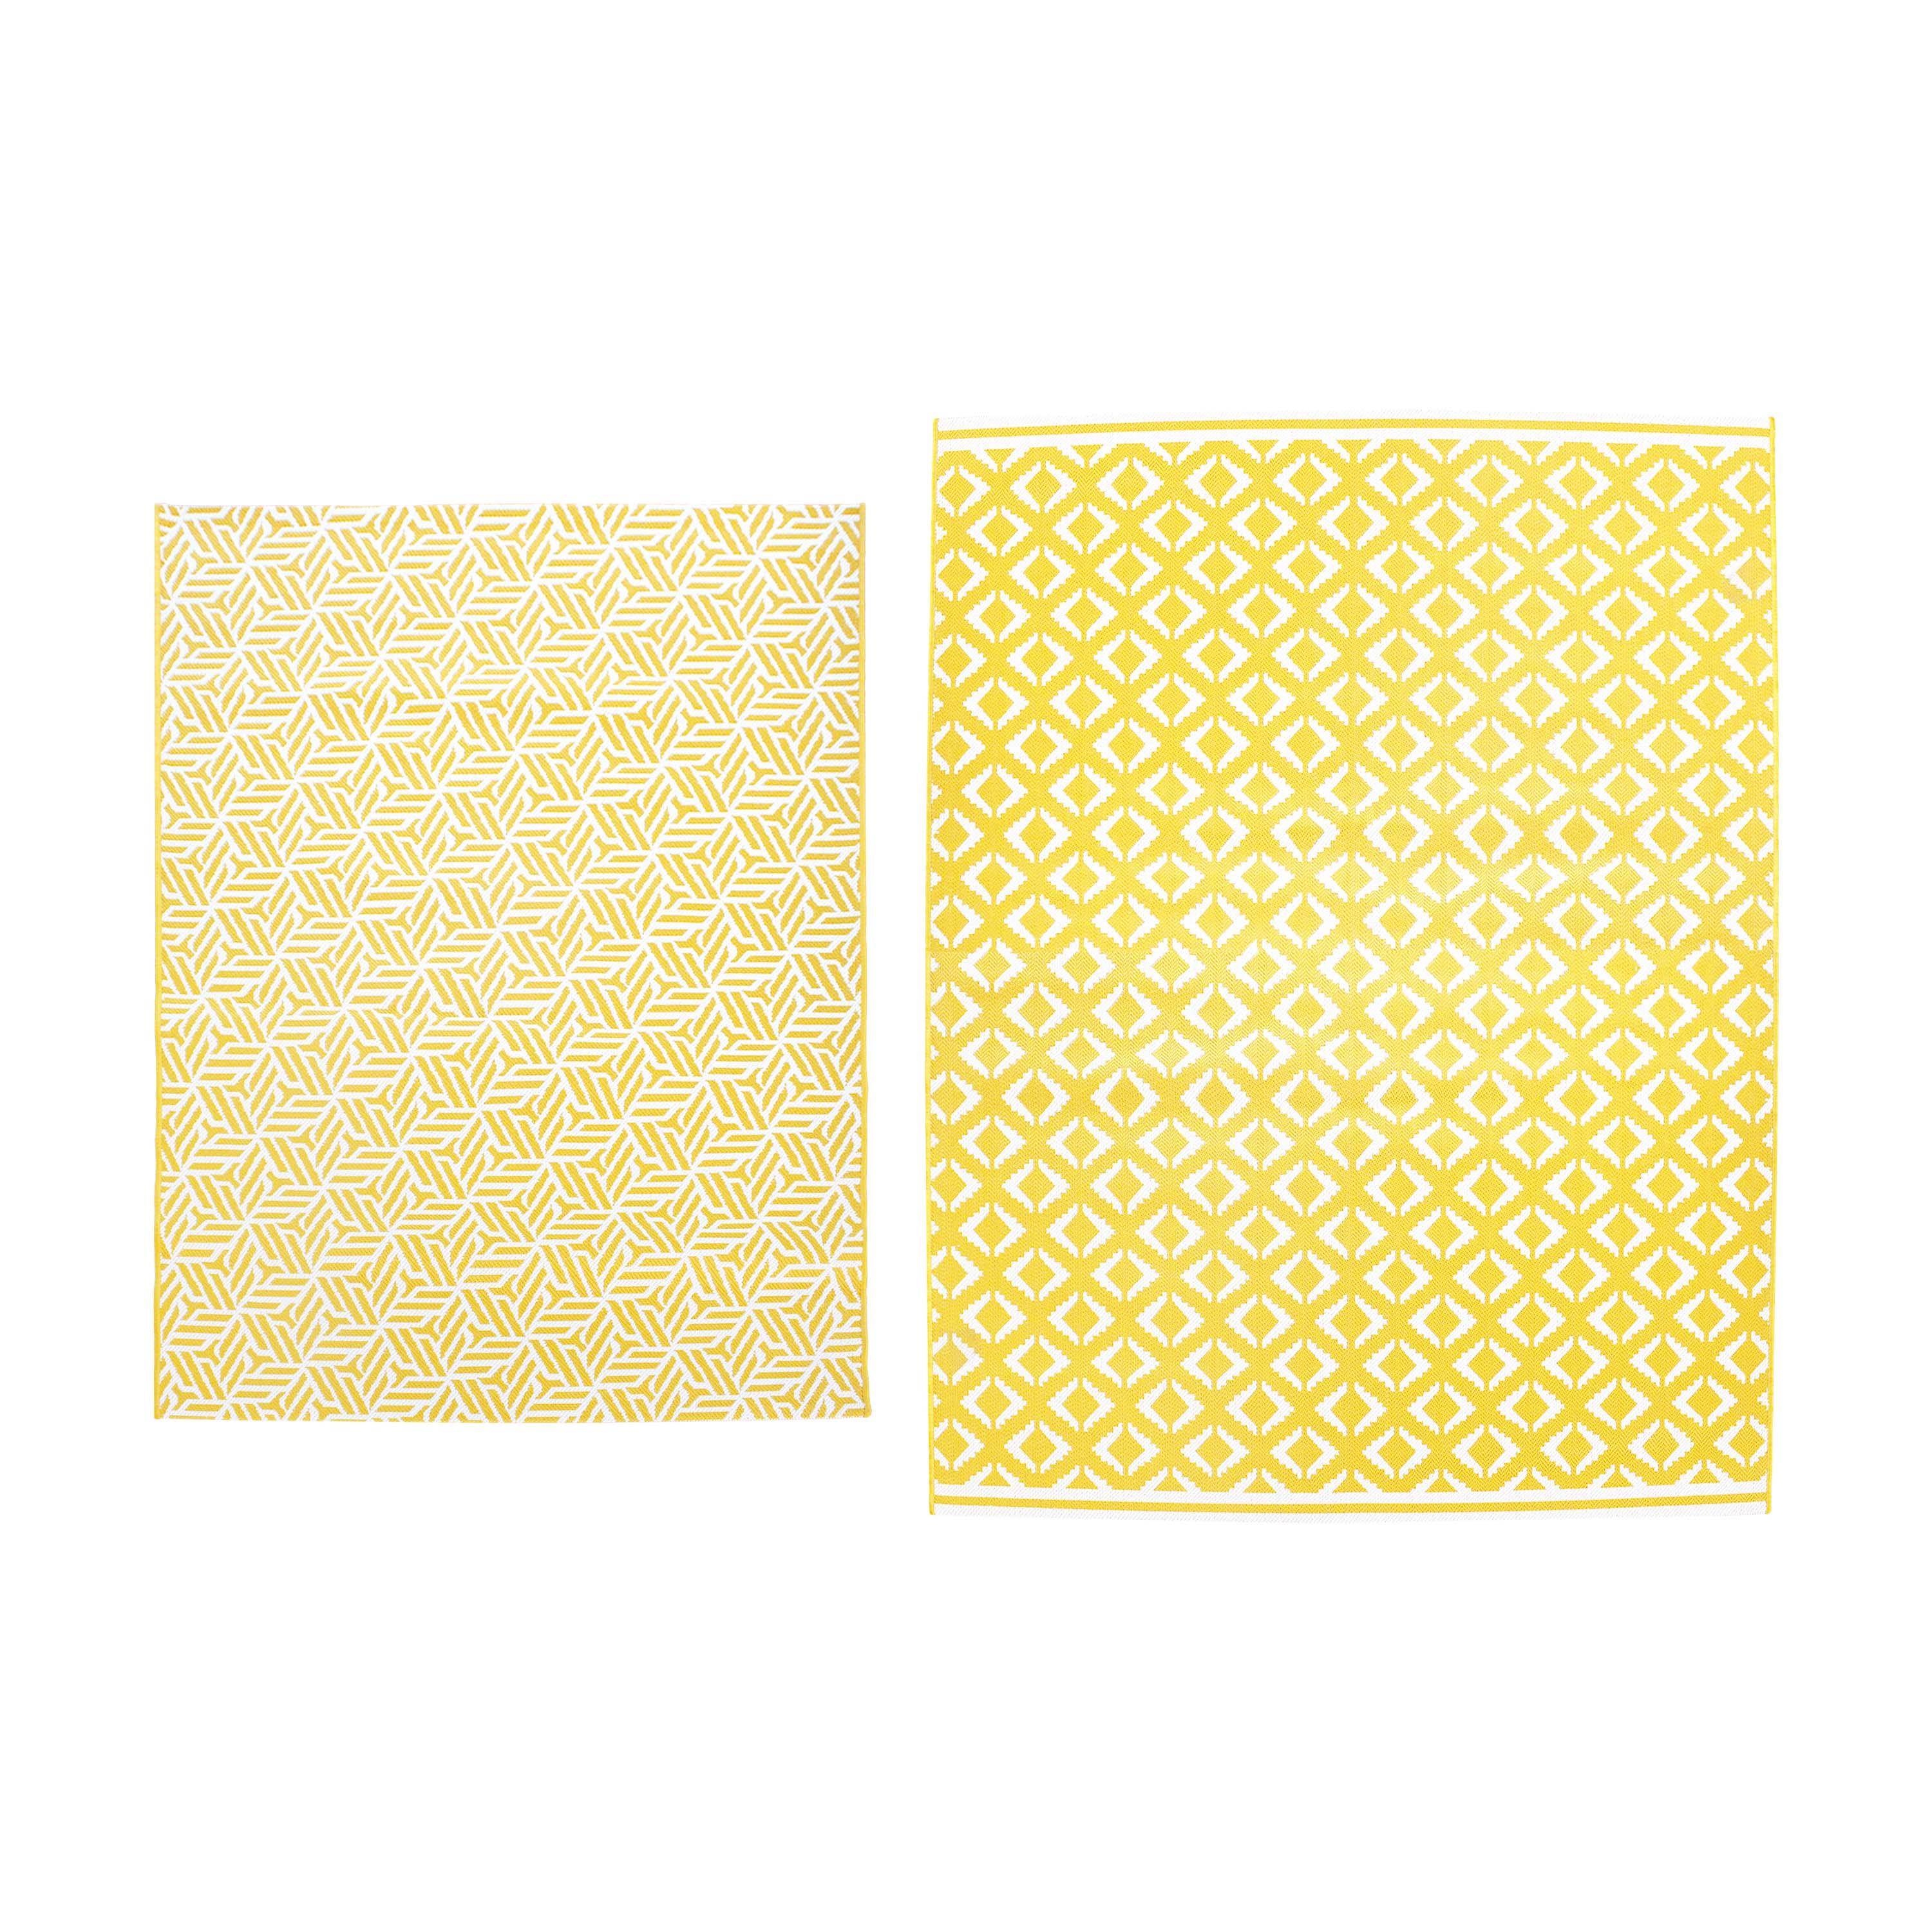 Tapis extérieur/intérieur 160 x 230 cm, jaune et blanc, densité 1,15 kg/m2, motif losanges, traité anti UV, toutes saisons Photo5